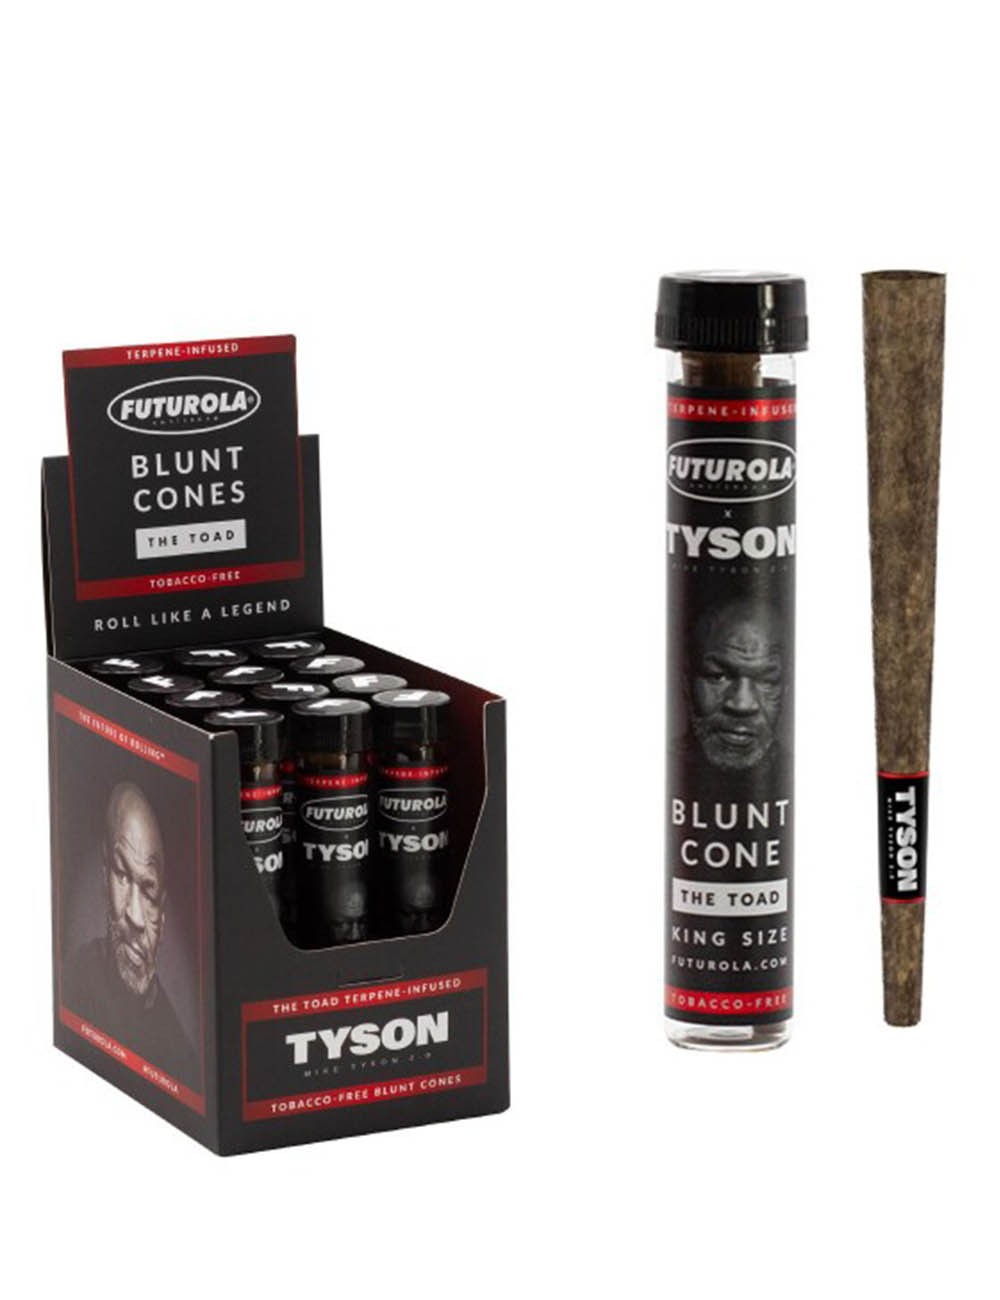 Conuri pre-rulate Futurola | Tyson 2.0 Terpene-Infused Blunt Cones